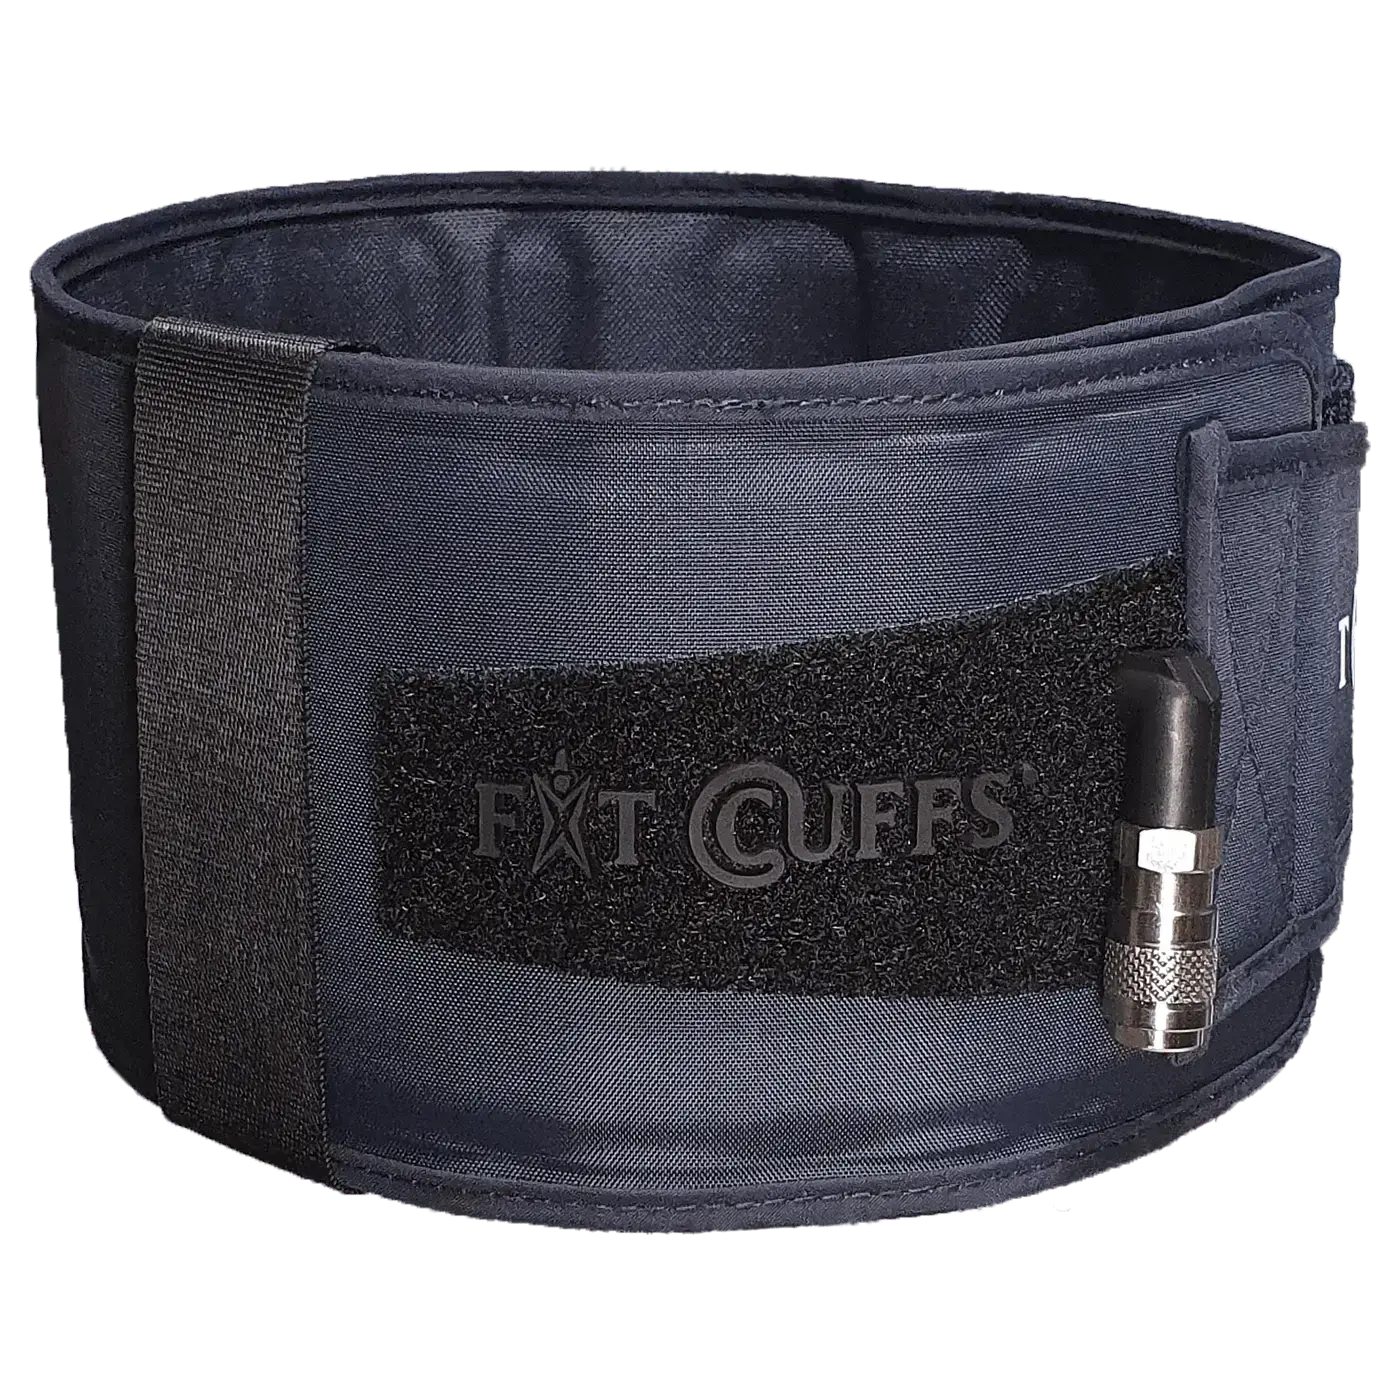 Se Fit Cuffs - Leg Cuff hos Fitcuffs.com